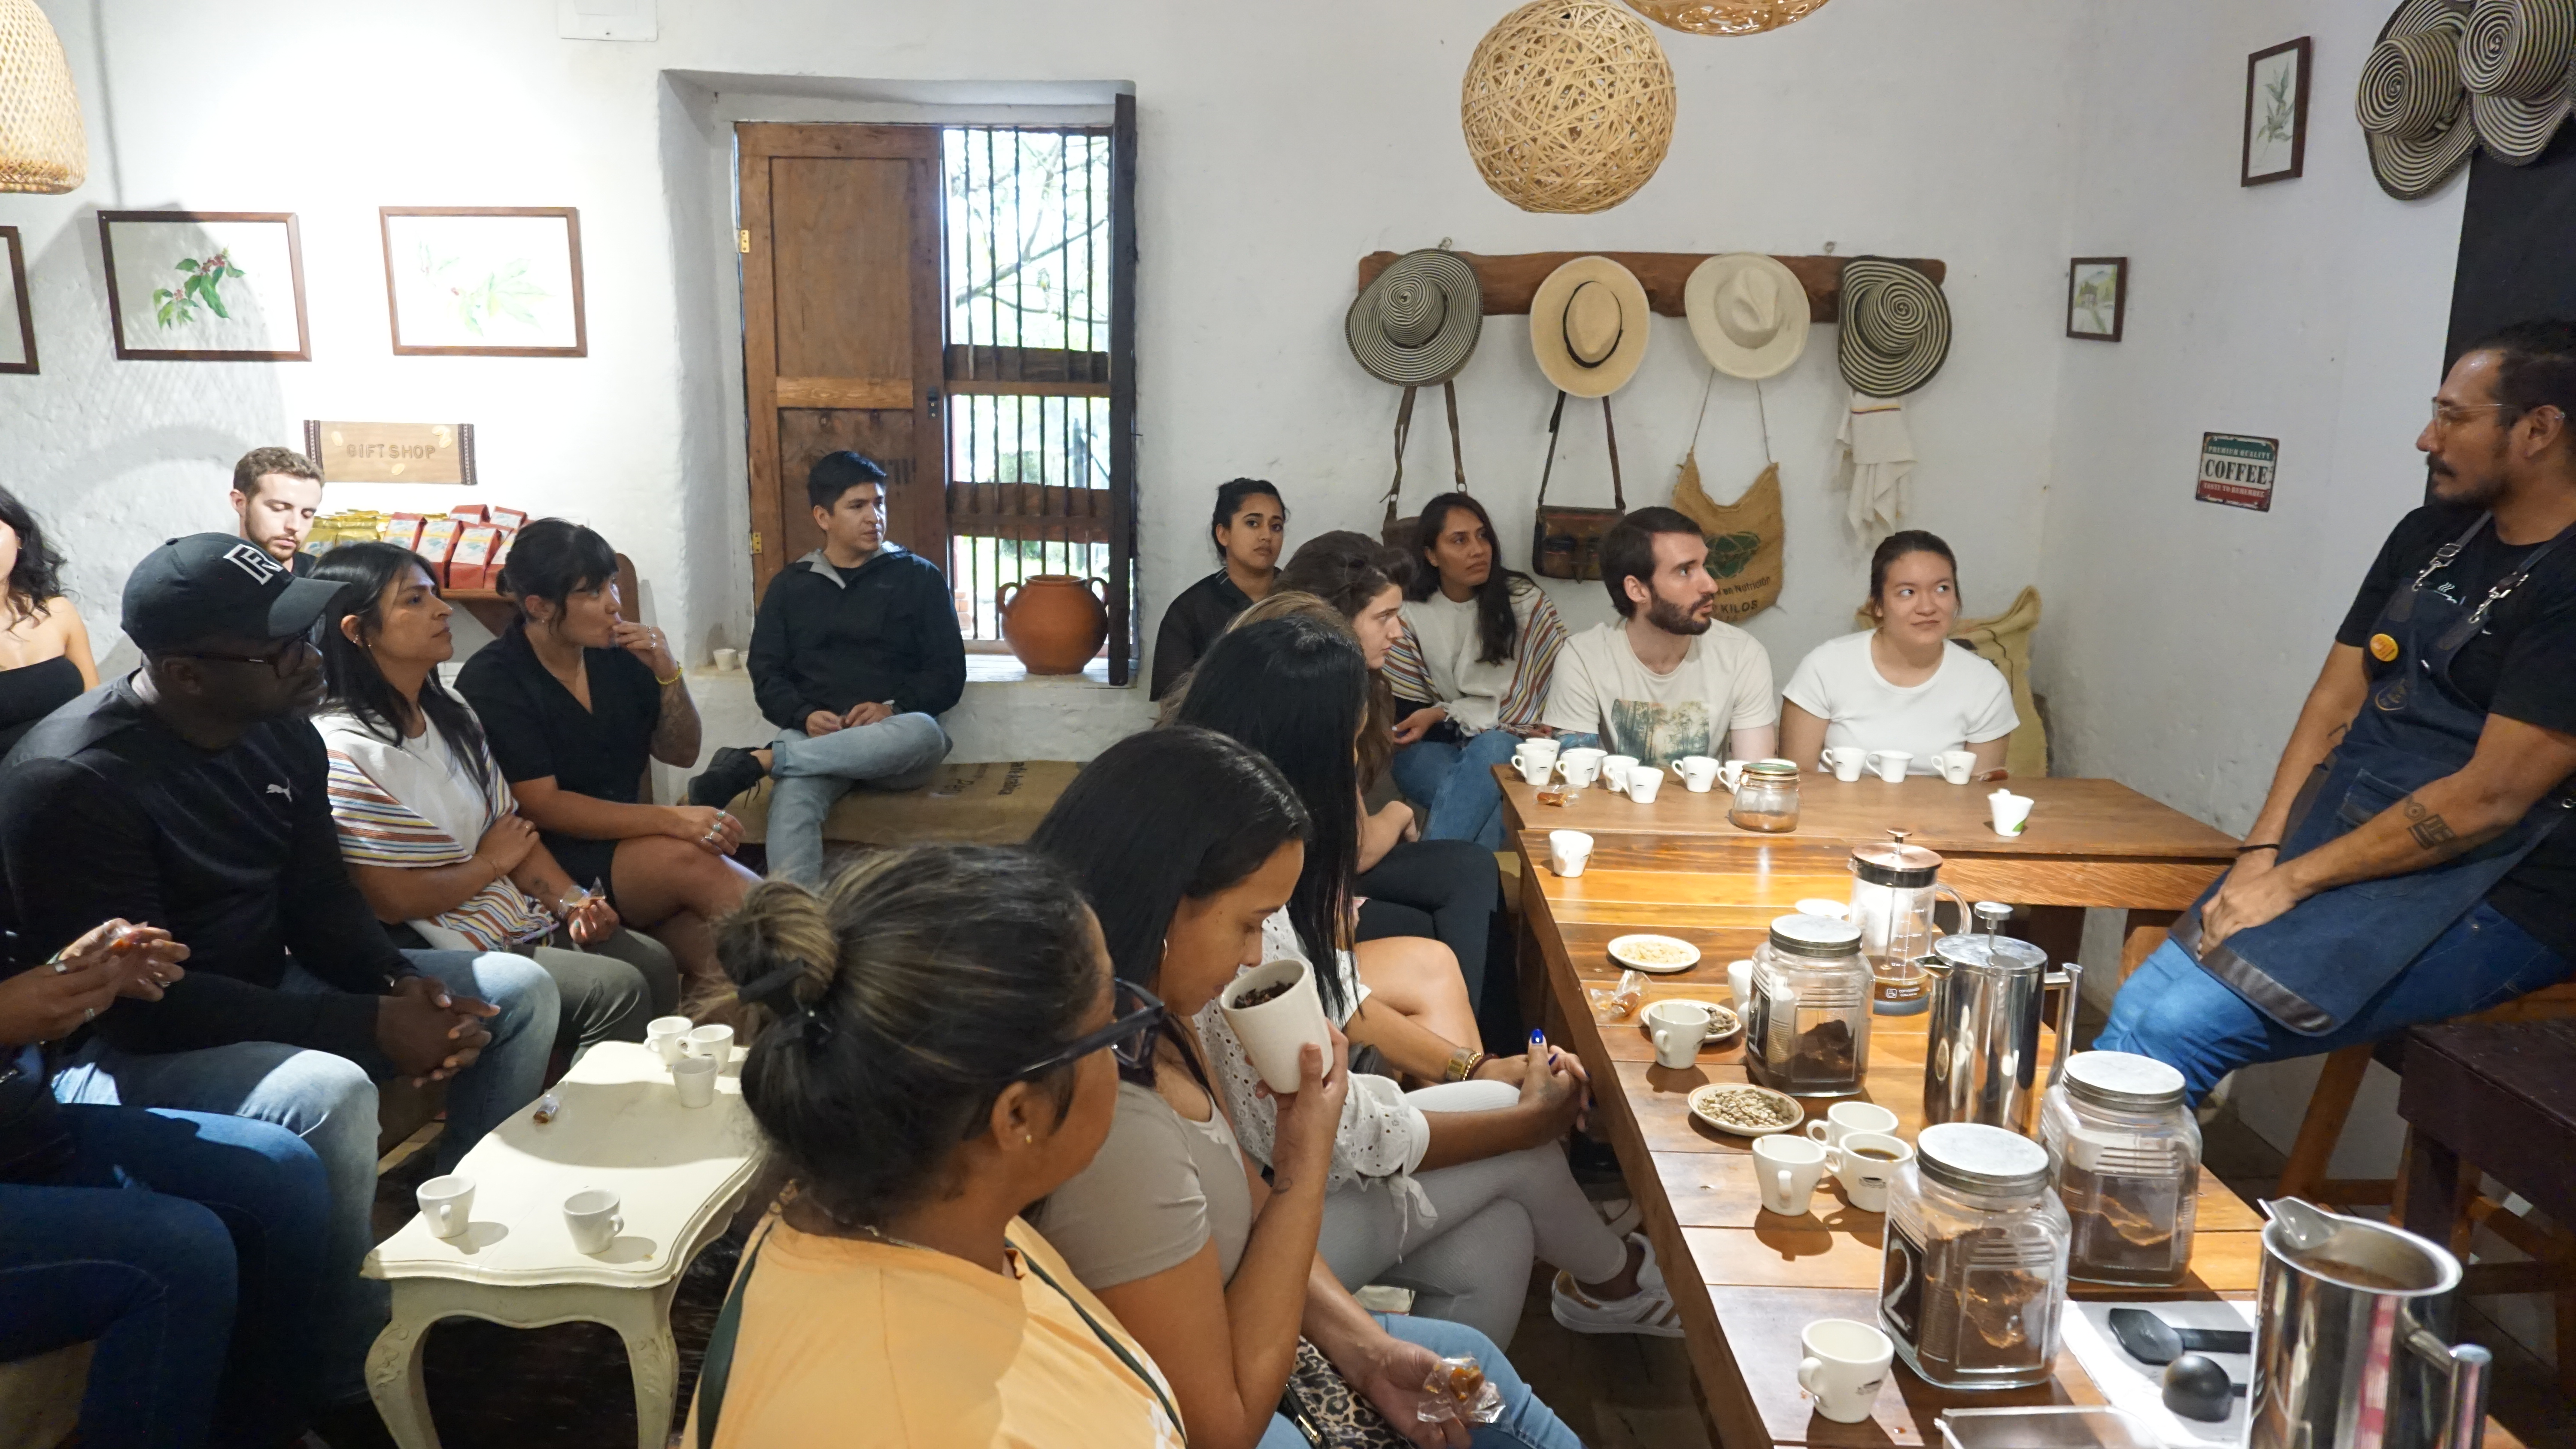 Beyond Colombia Tours | Tour: Coffee Farm Experience in Santa Elena